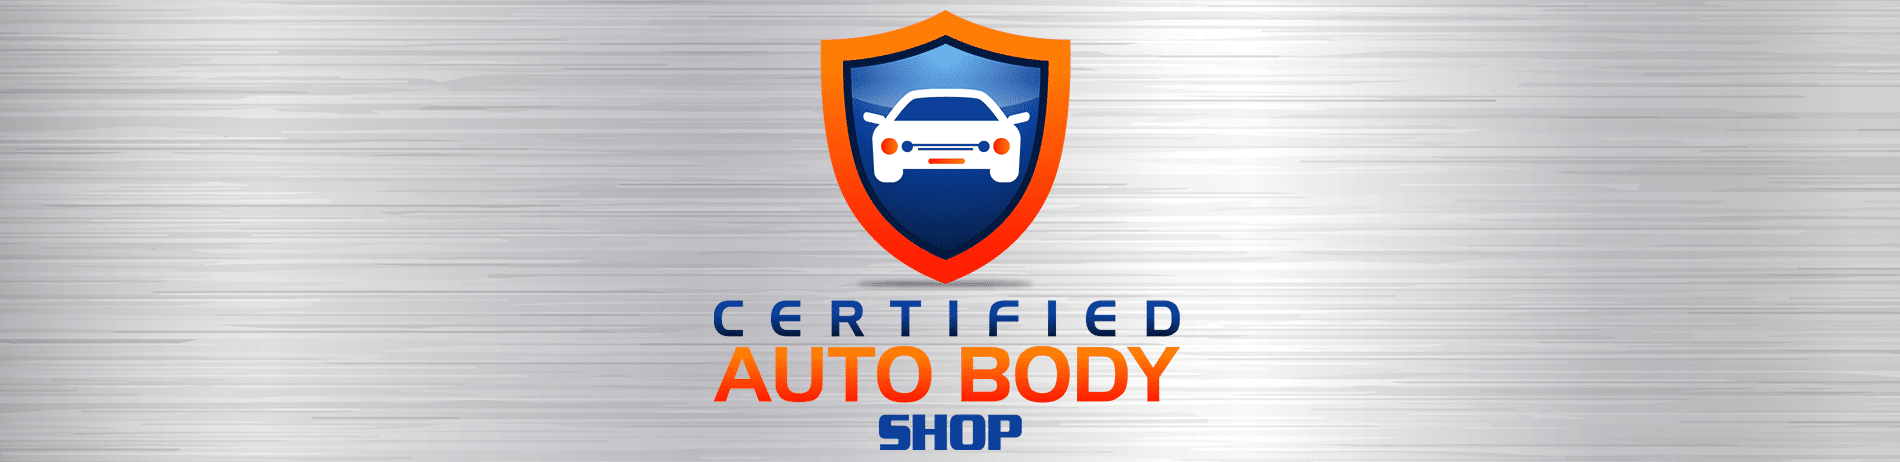 Kia Certified Auto Body Shop